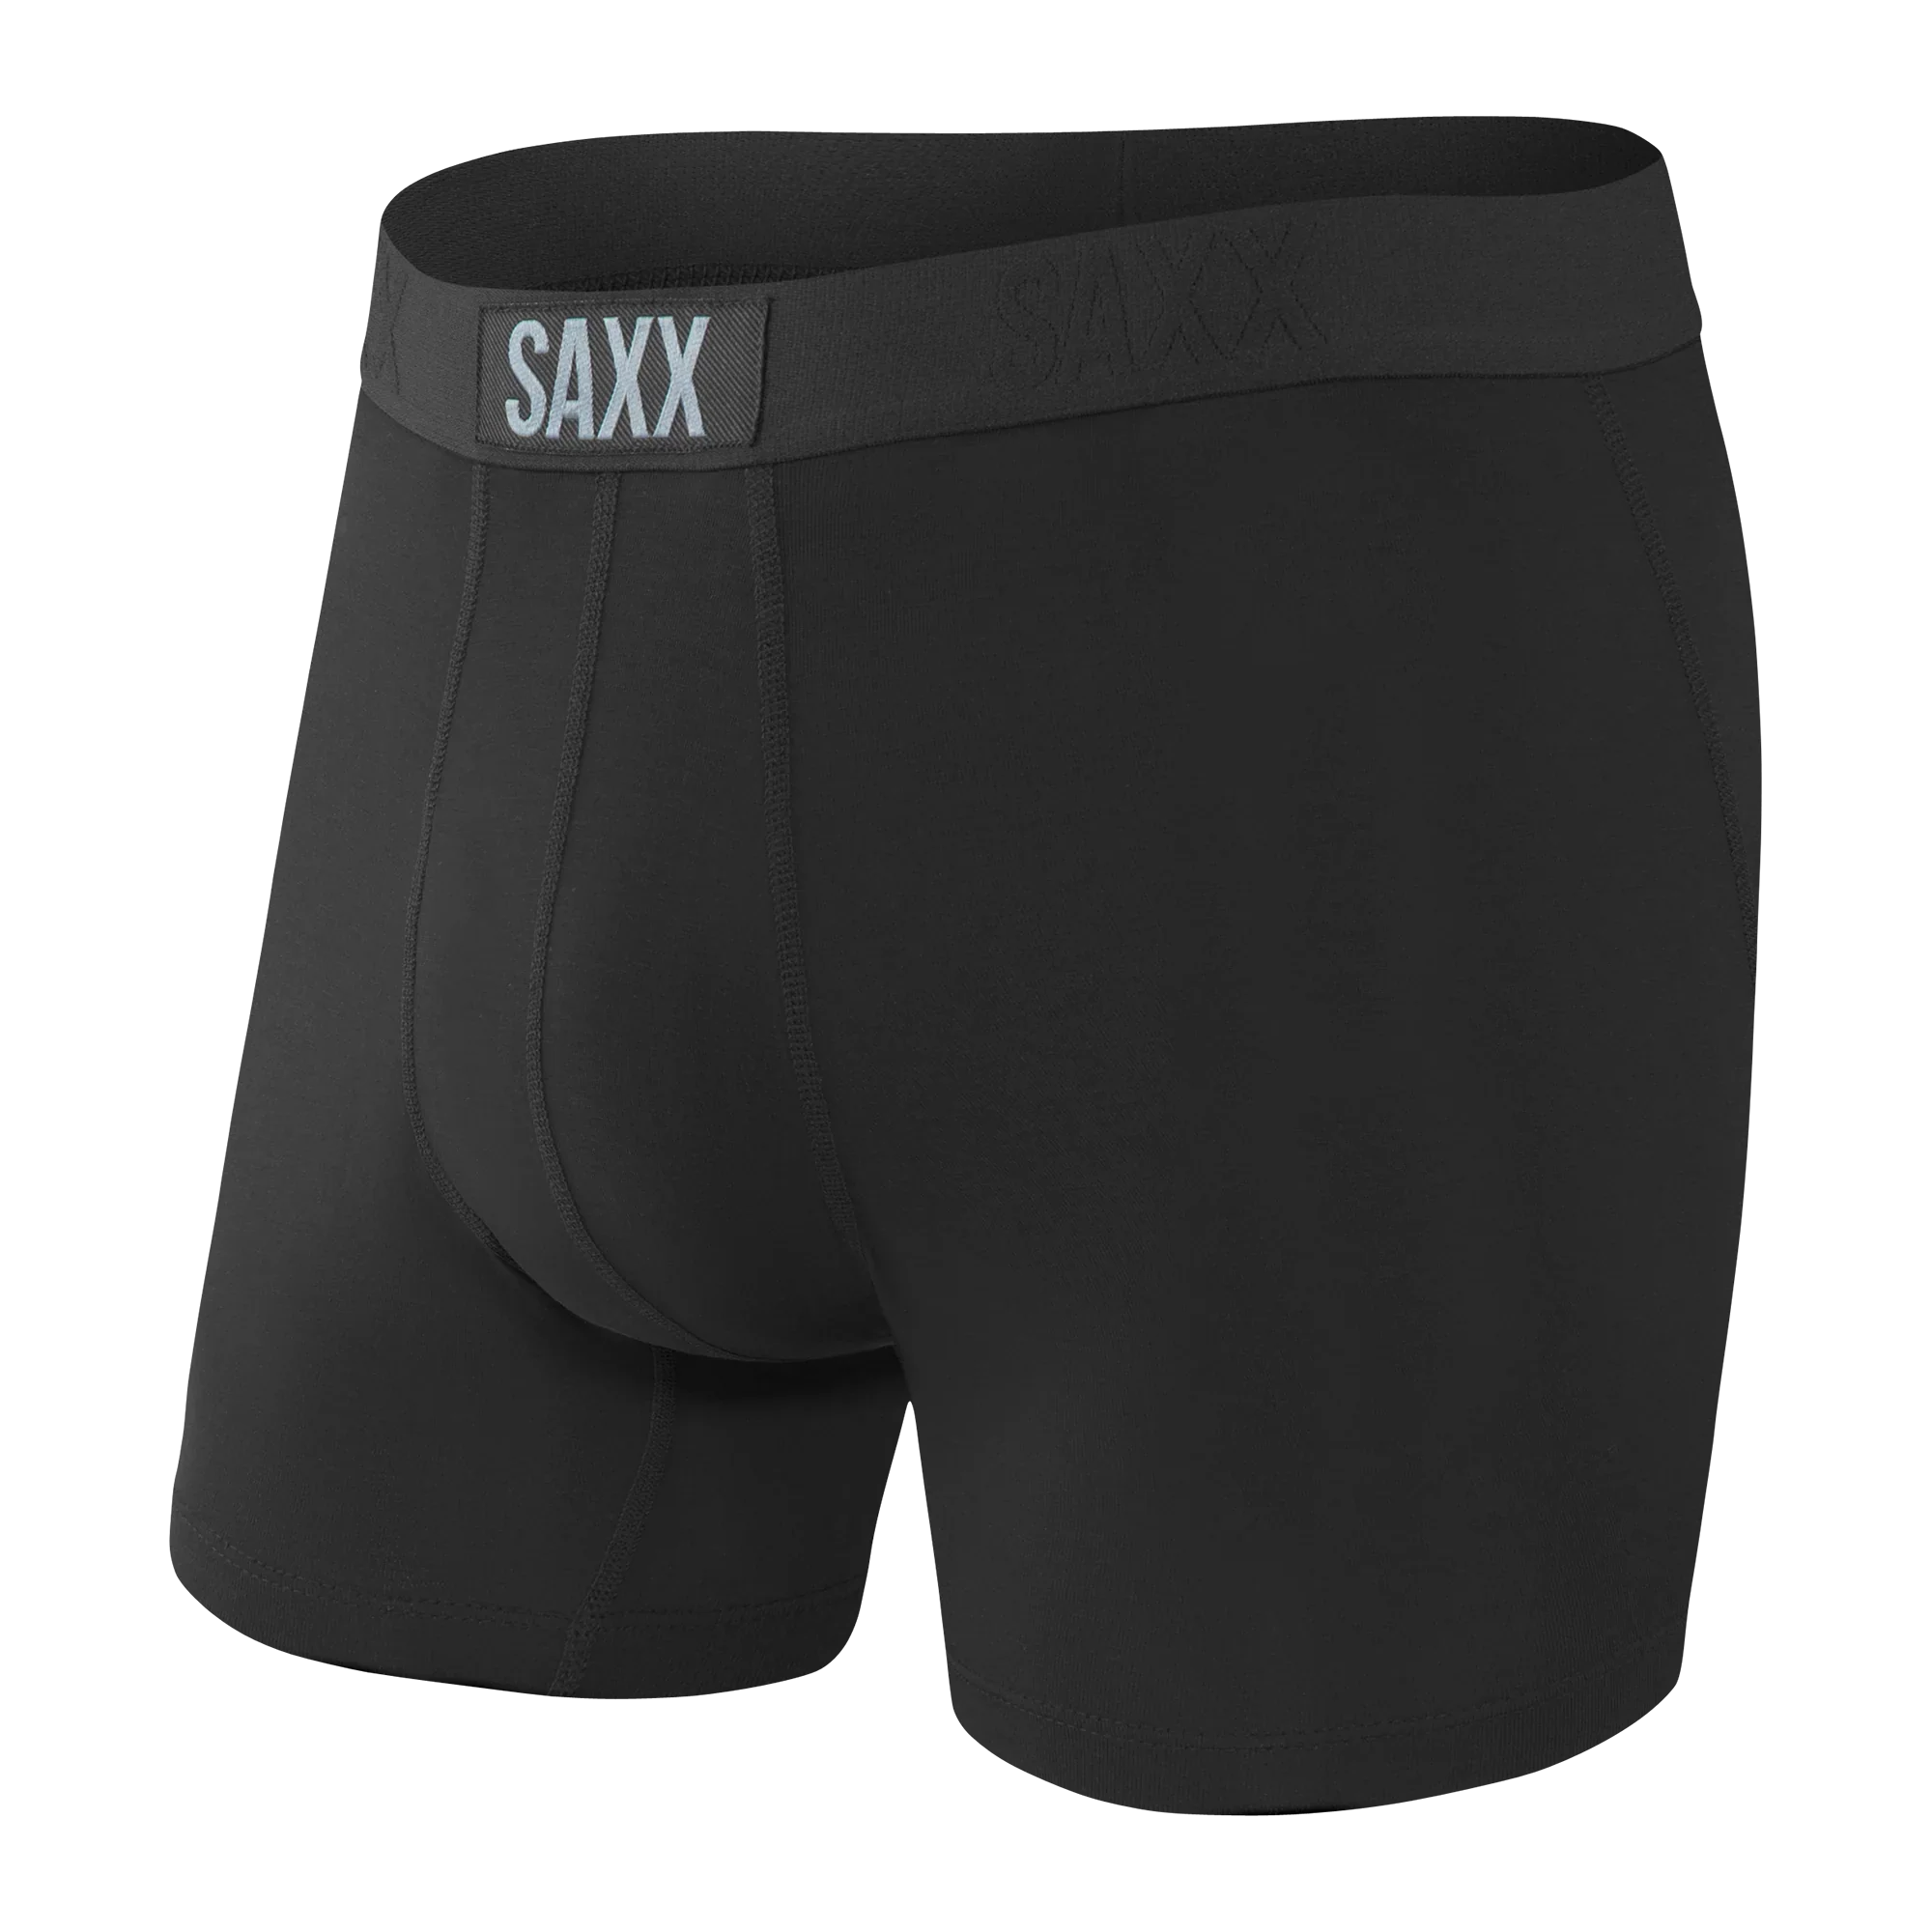 'SAXX Vibe Super Soft Boxer Brief - Black/Black' in 'Black' colour